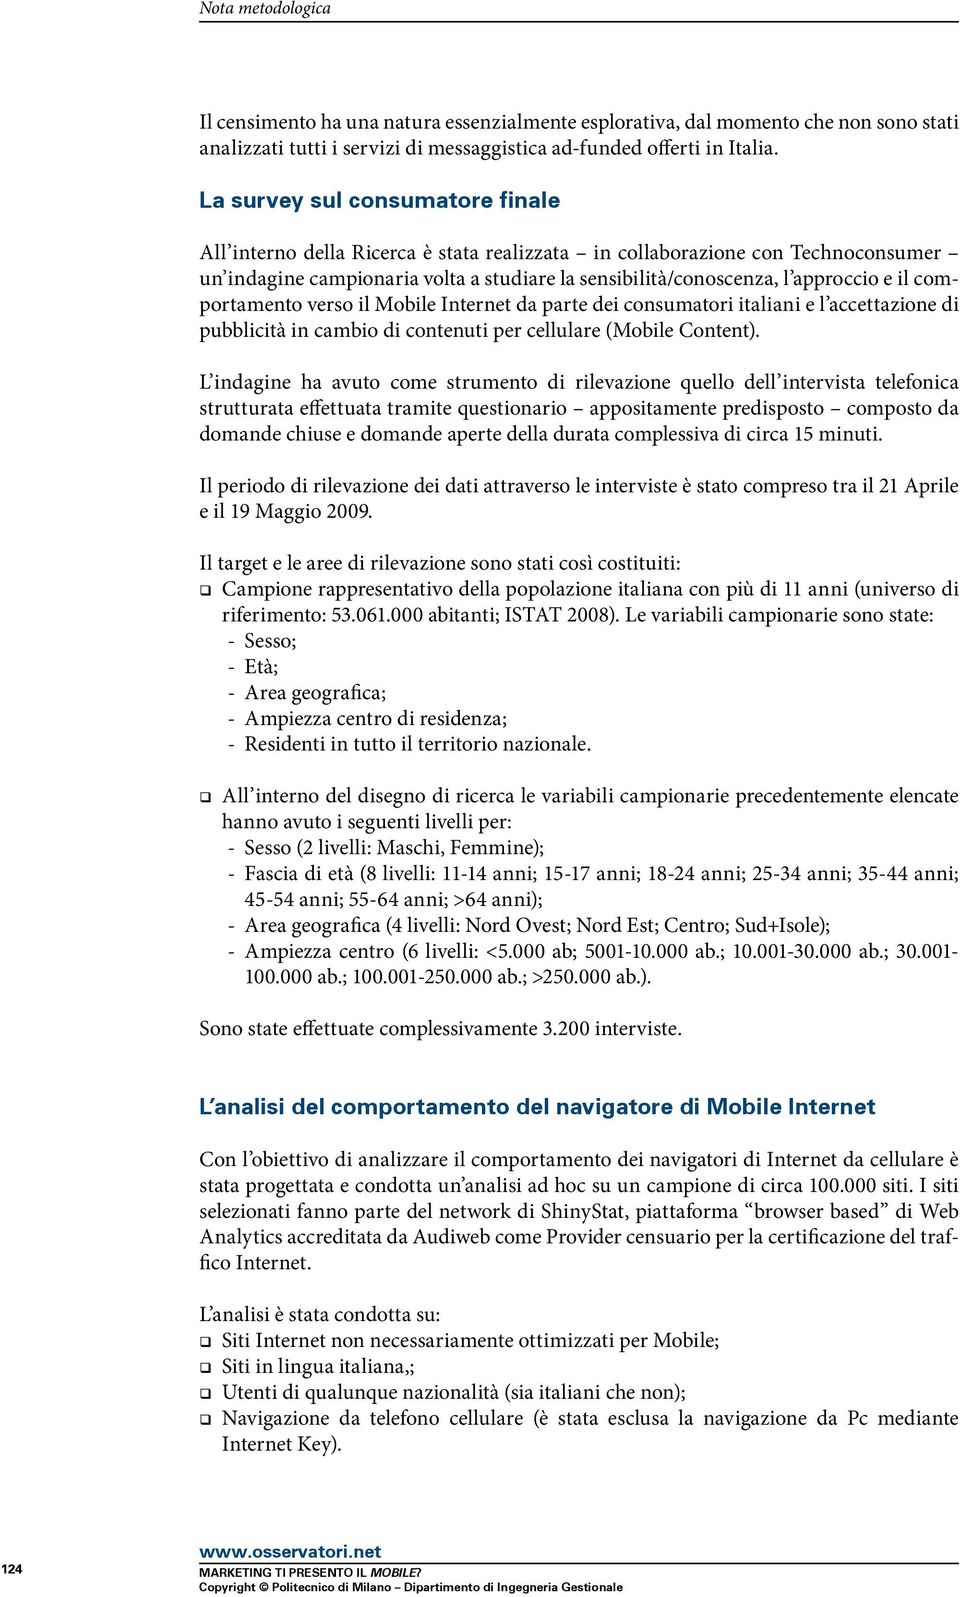 comportamento verso il Mobile Internet da parte dei consumatori italiani e l accettazione di pubblicità in cambio di contenuti per cellulare (Mobile Content).